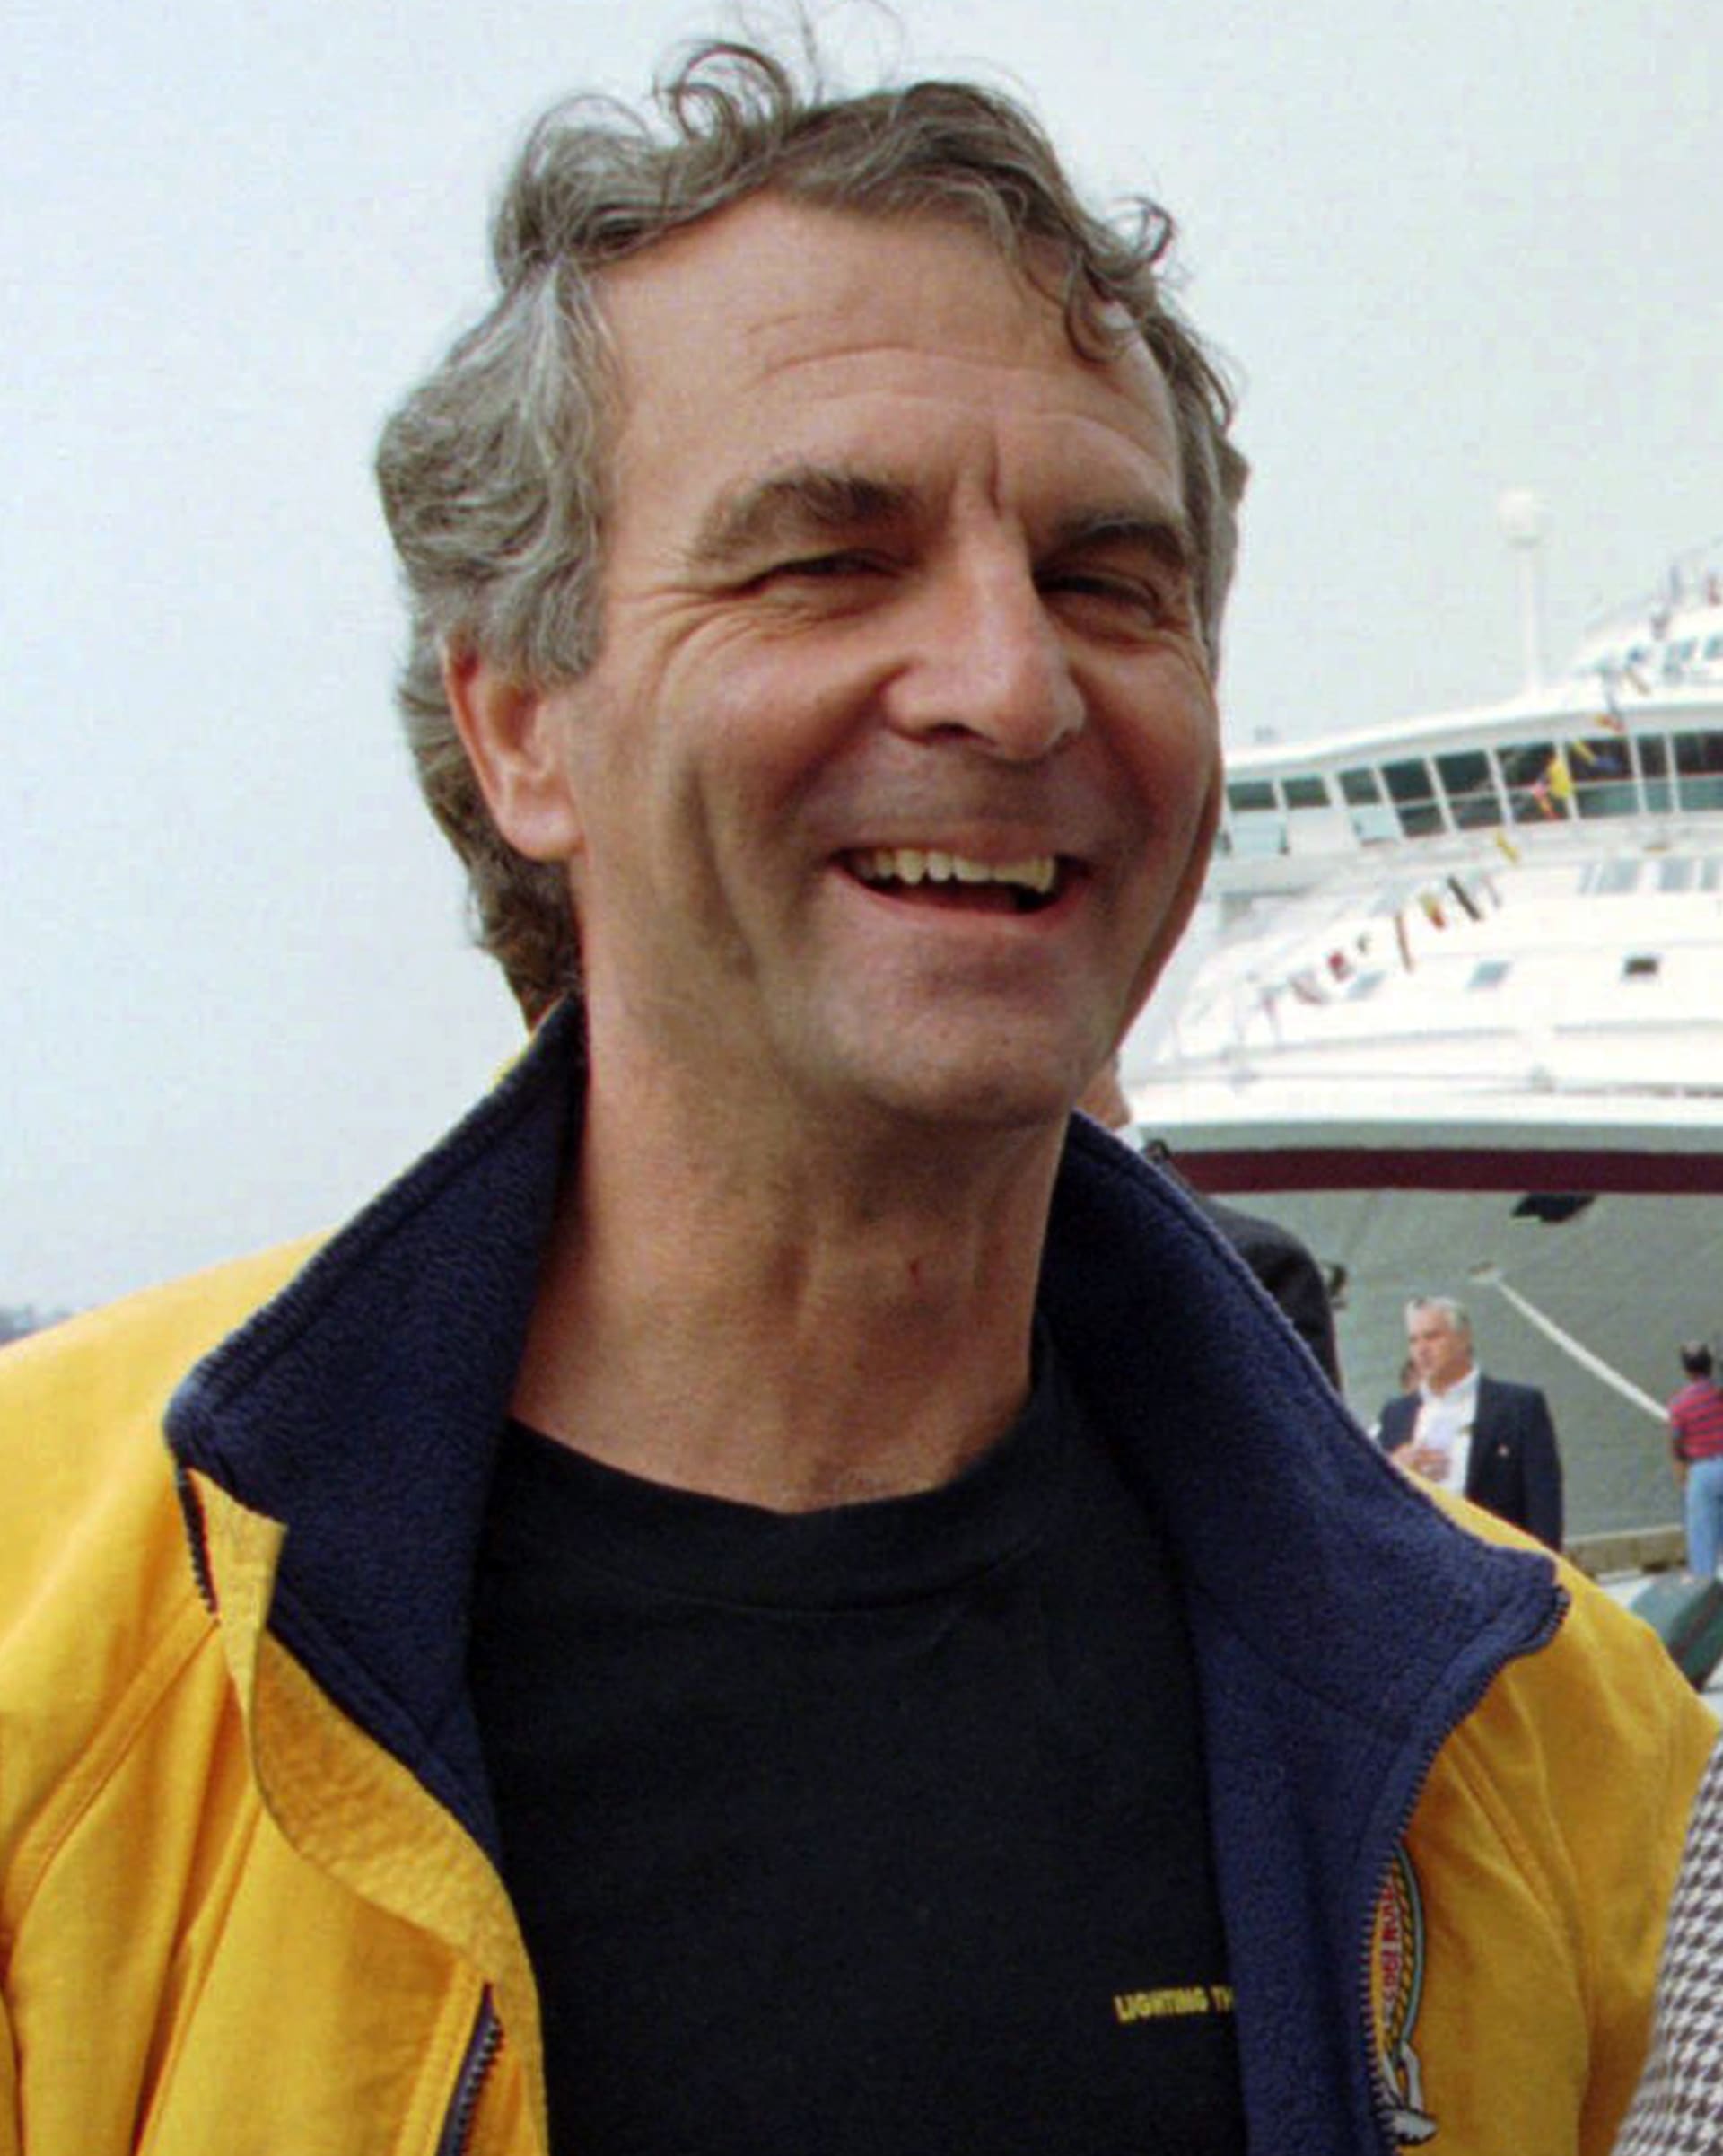 Nejstarší účastník byl 77letý Paul-Henry Nargeolet, bývalý potápěč francouzského námořnictva. 